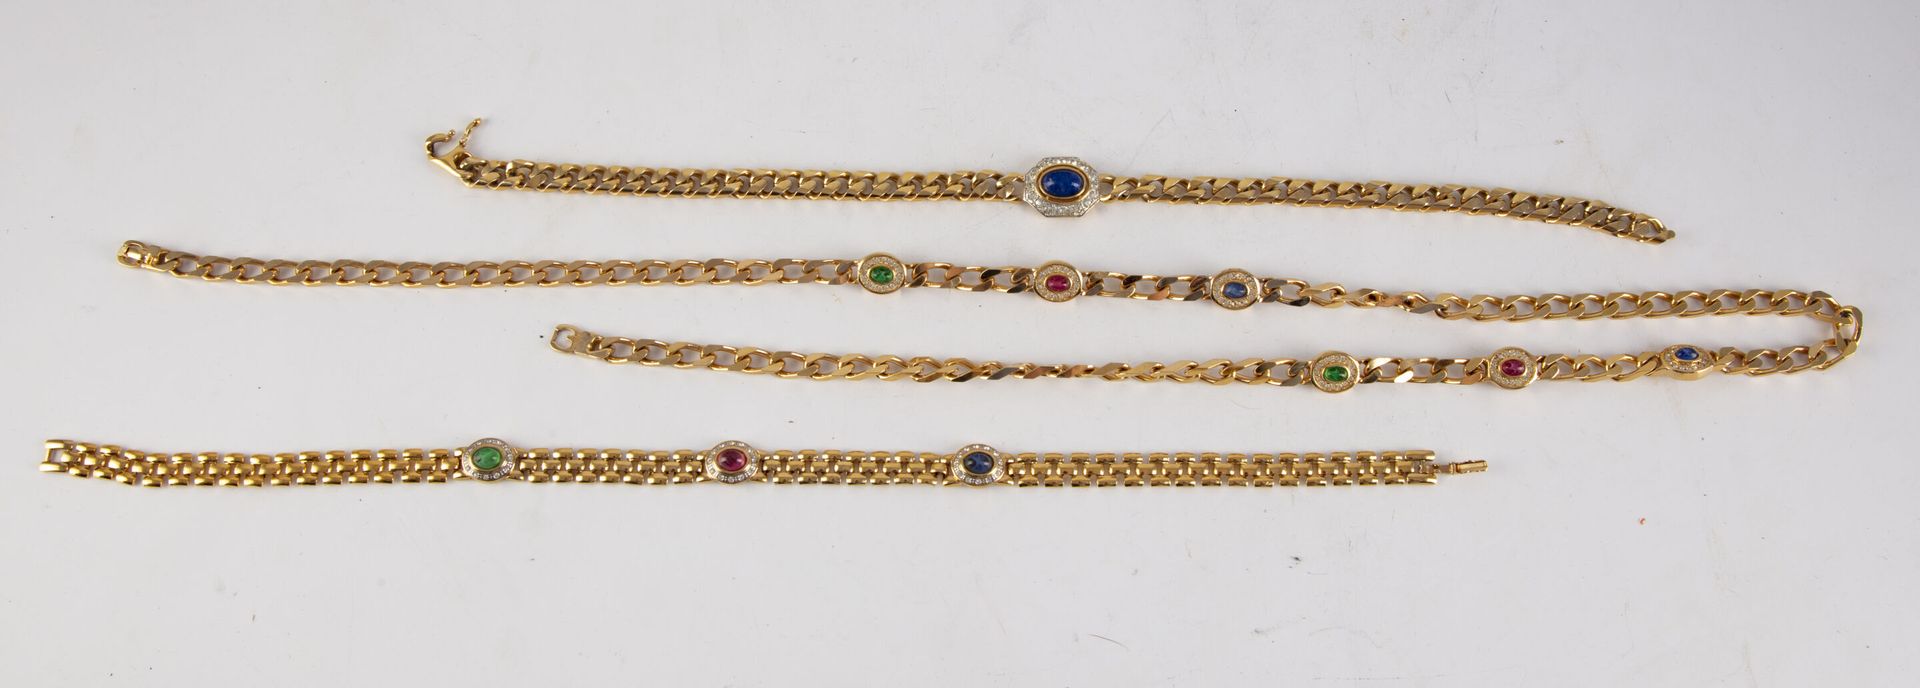 Null 格拉斯 
镀金金属和水钻的项链。 
已签名
长：89厘米 

附有署名D'Orlan的镀金金属项链，长：37厘米。附带一条镀金金属项链，长：39厘米